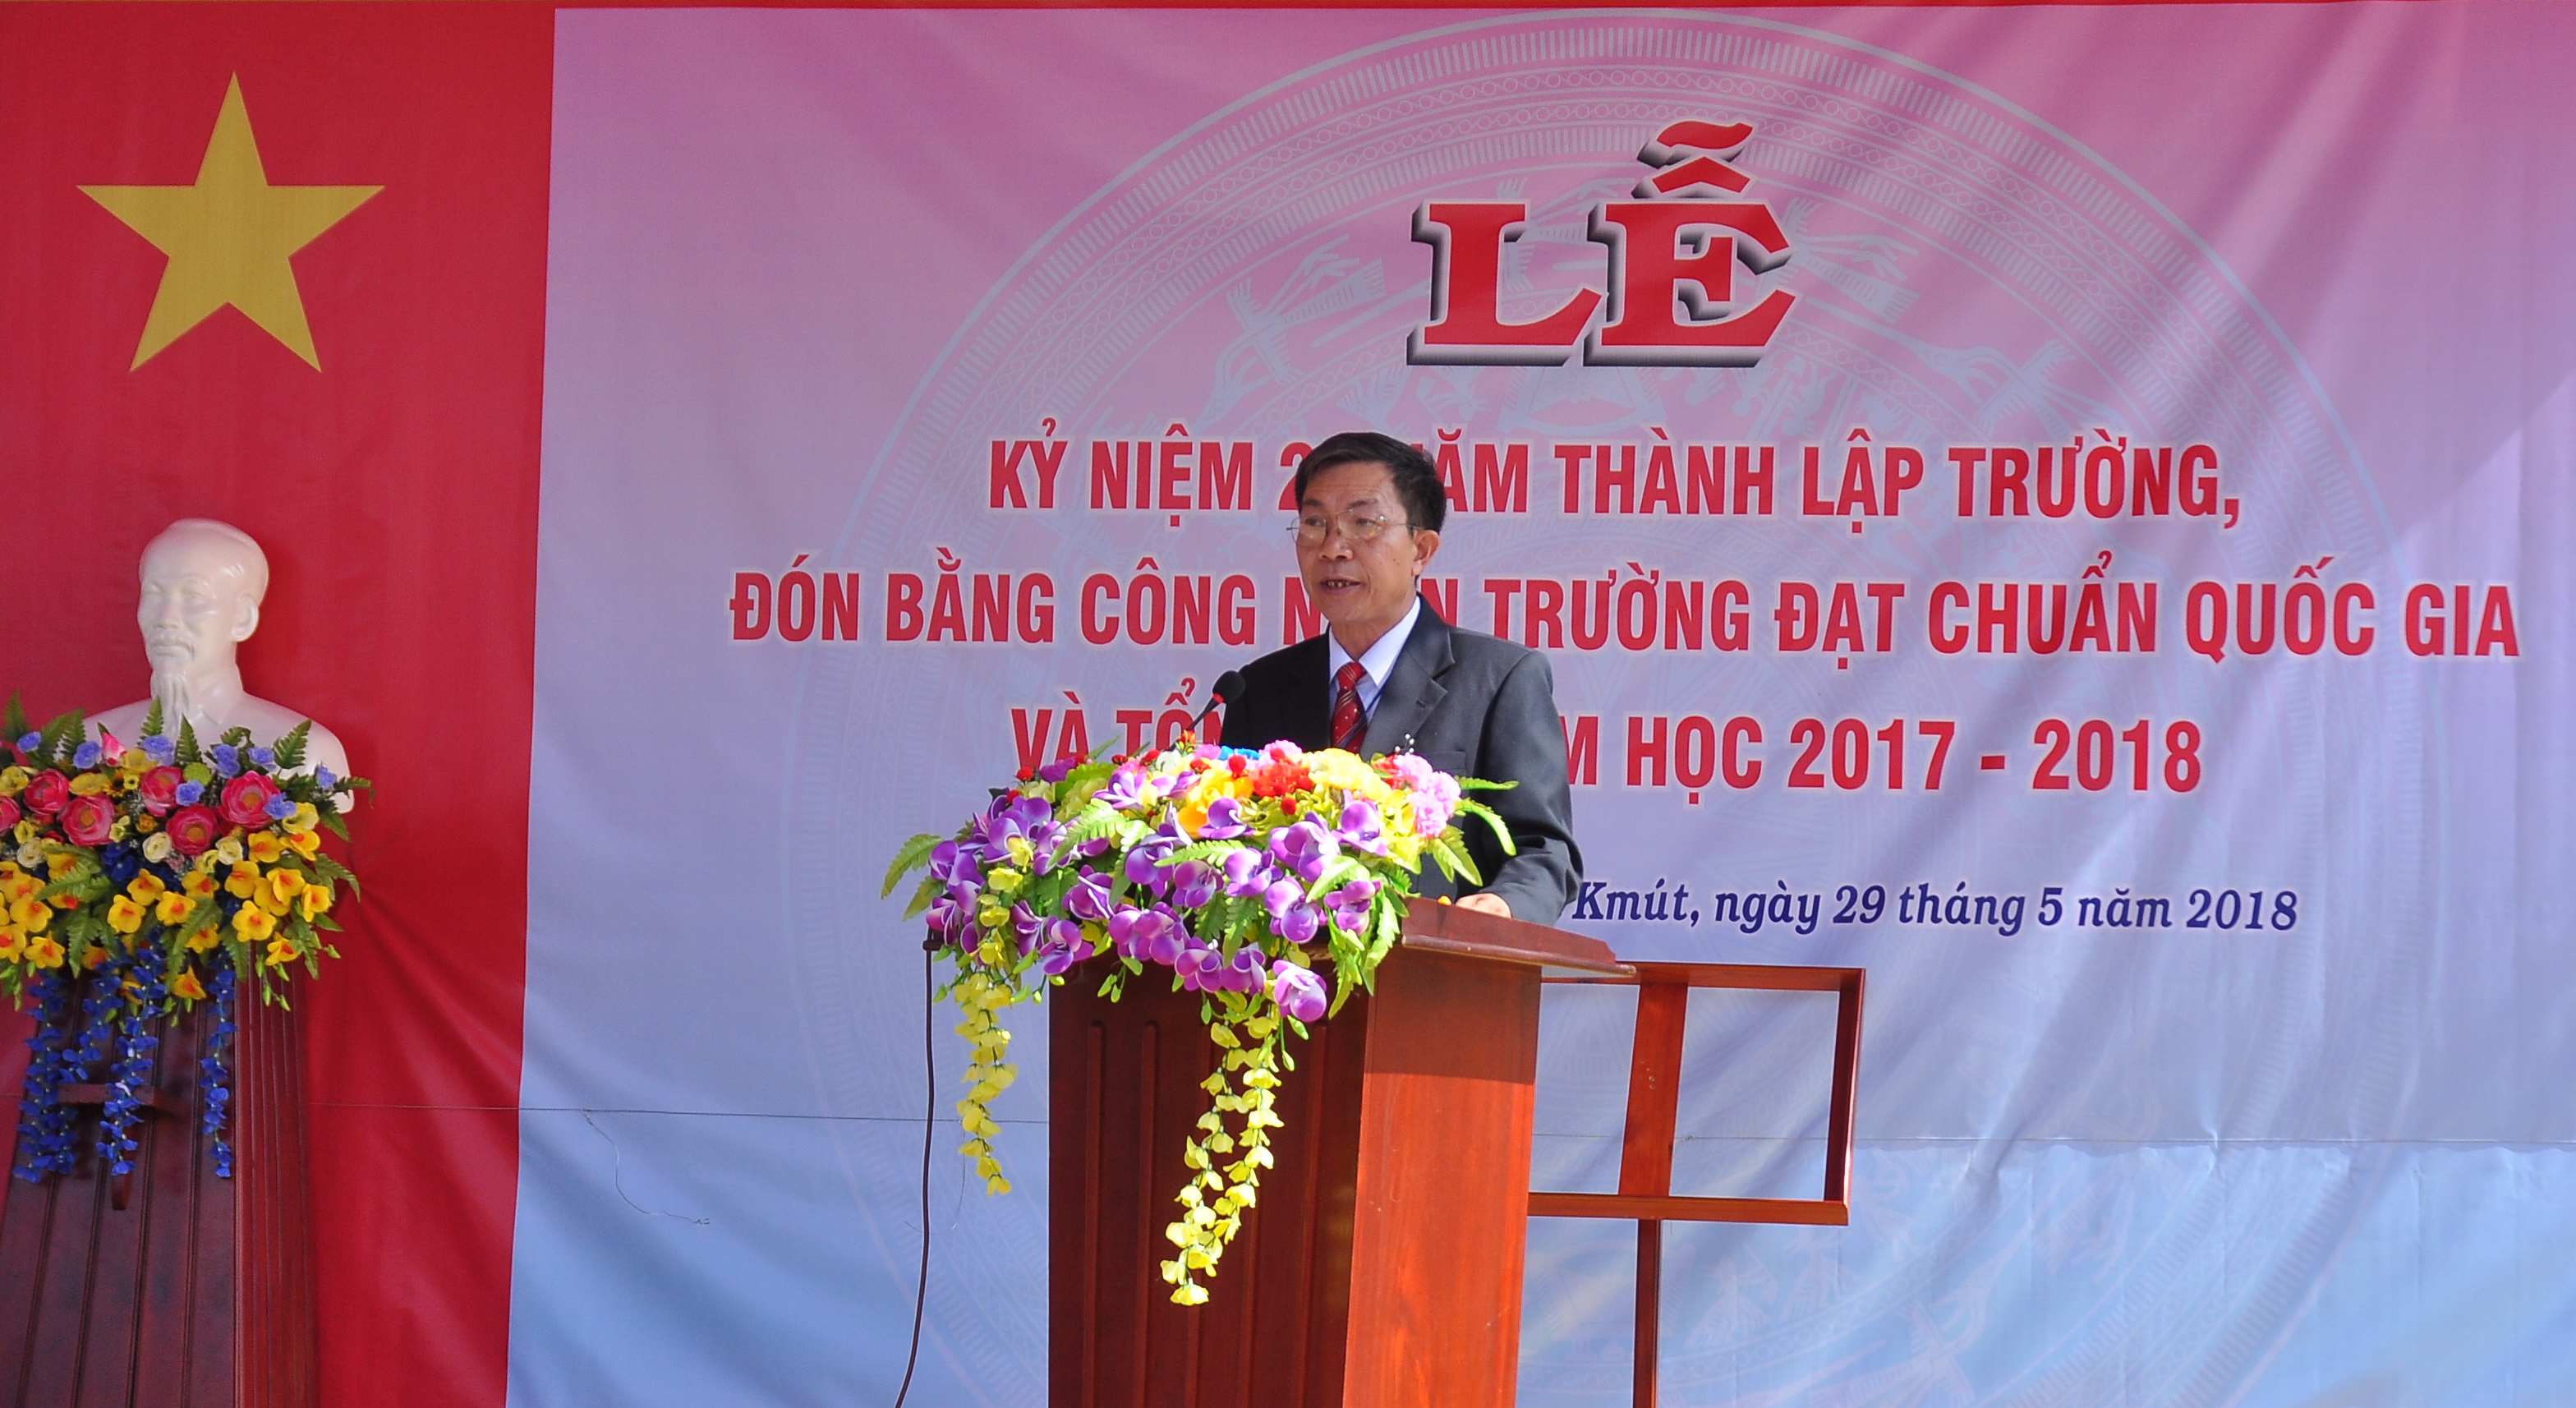 Lễ kỷ niệm 20 năm thành lập trường THCS Nguyễn Đức Cảnh và đón bằng công nhận trường đạt chuẩn quốc gia